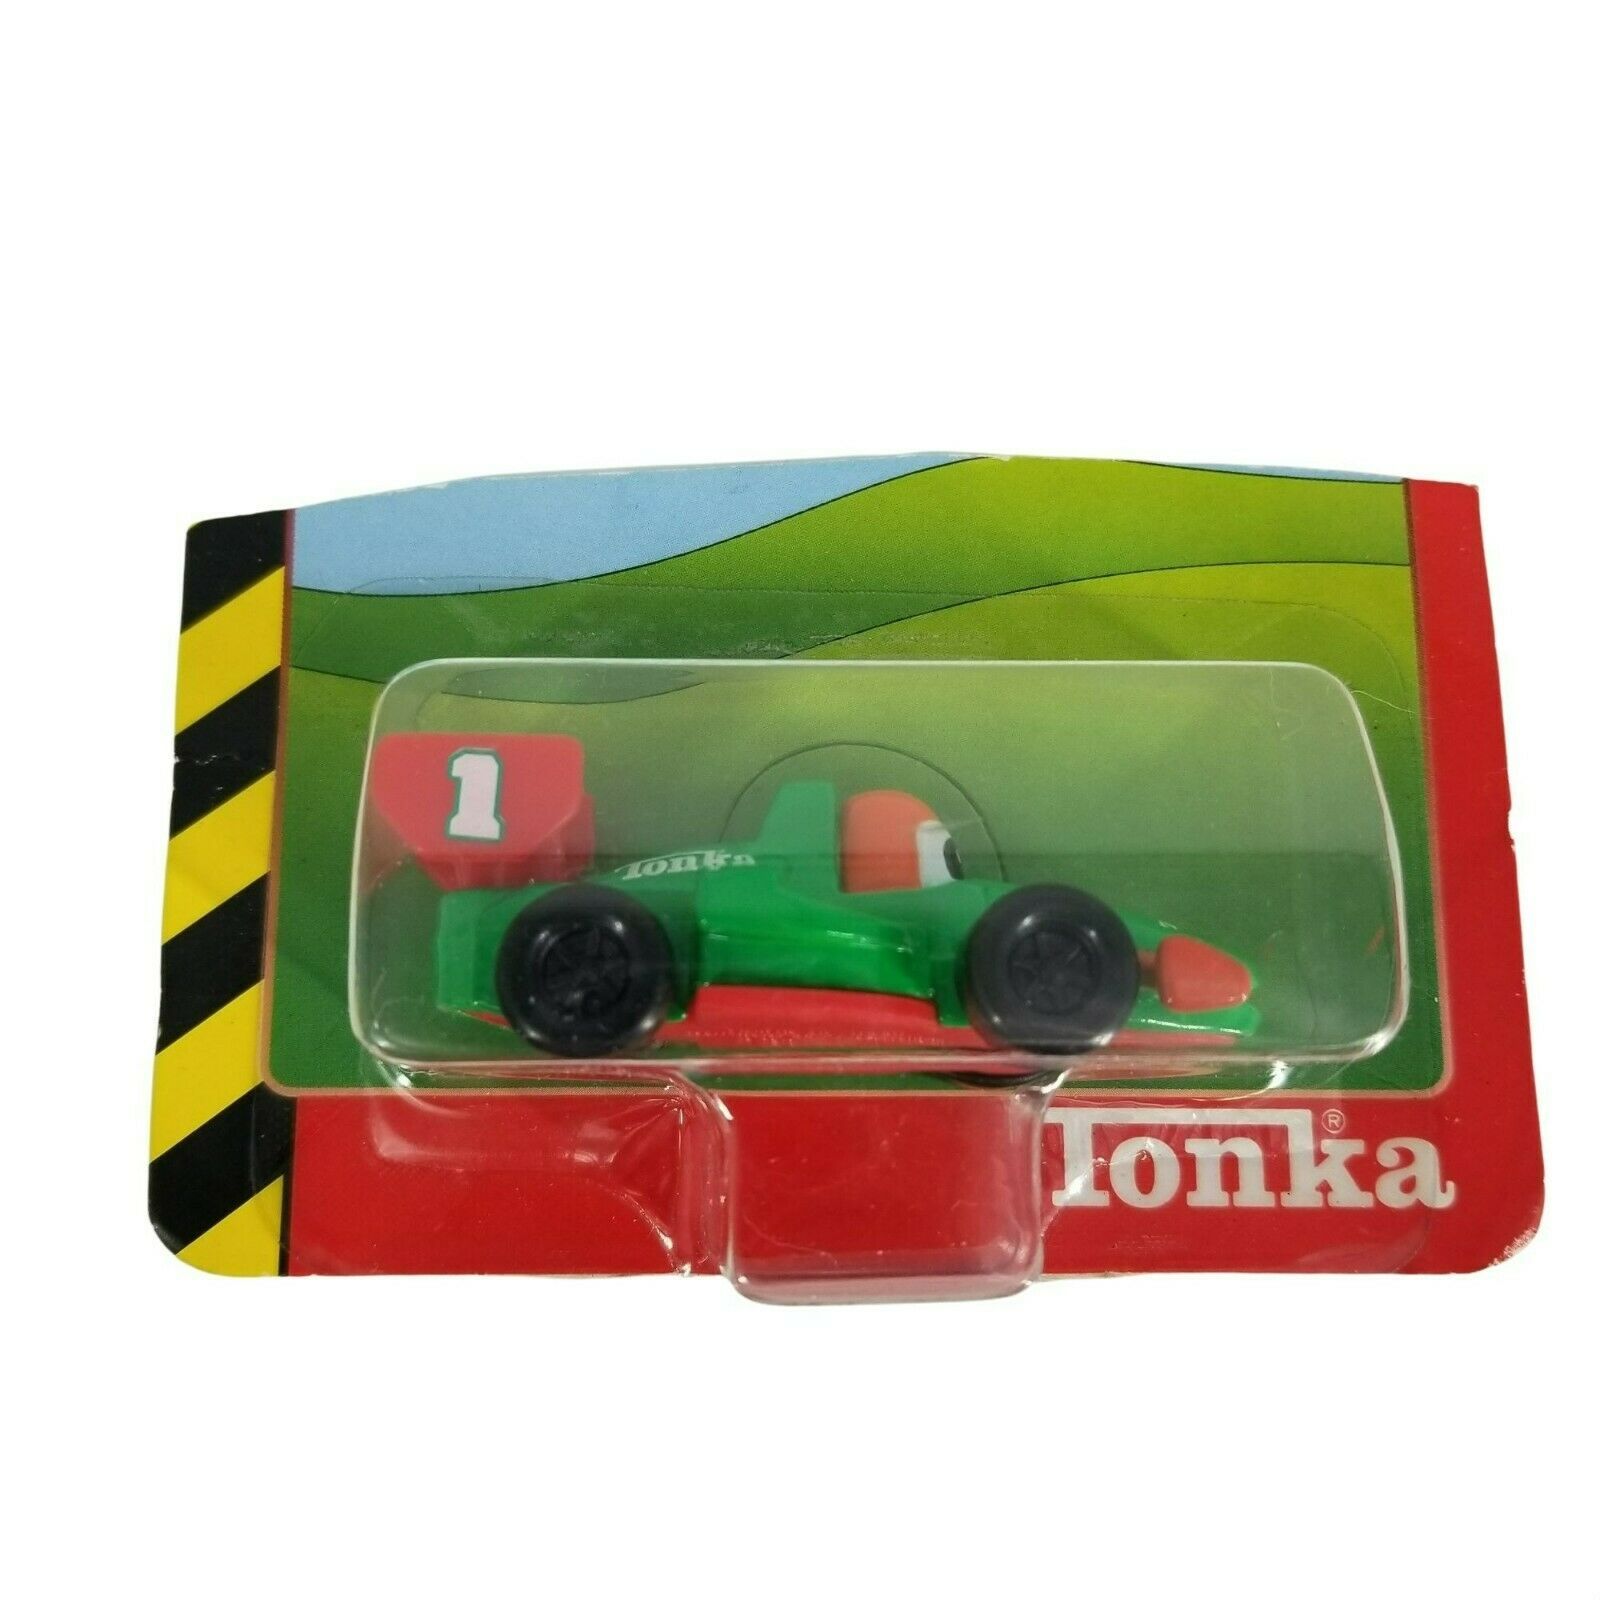 Tonka Li'l Chuck & Friends Diecast Toy Car Green Red Formula 1 Racecar - $14.85